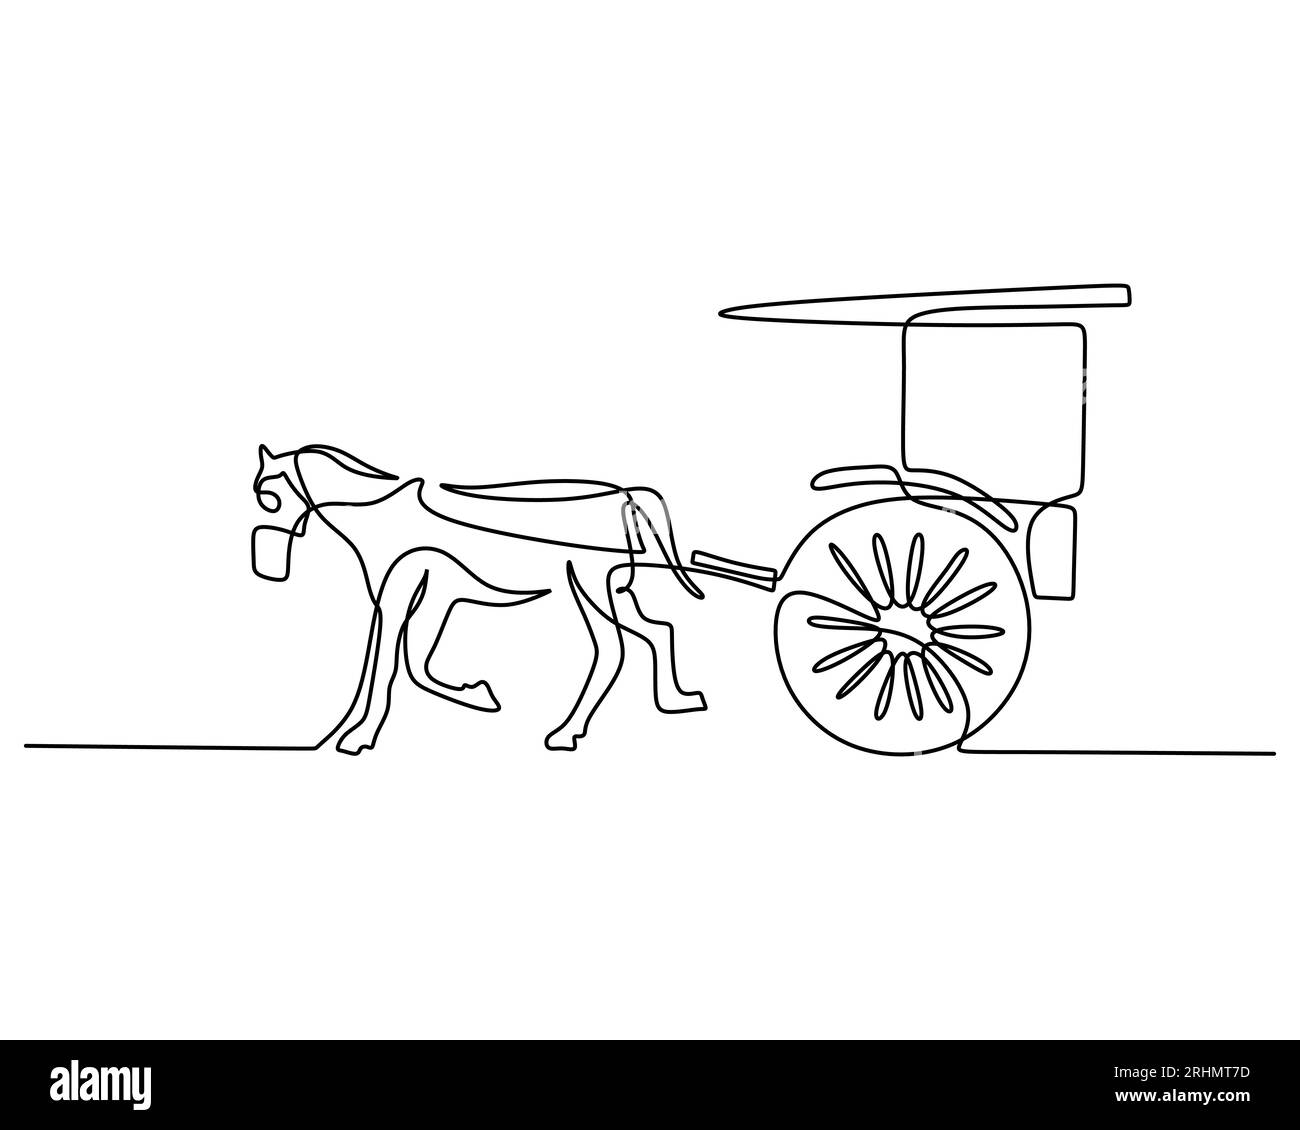 Una singola linea continua di carro con il cavallo che lo tira. Trasporto vintage isolato su sfondo bianco. Illustrazione Vettoriale